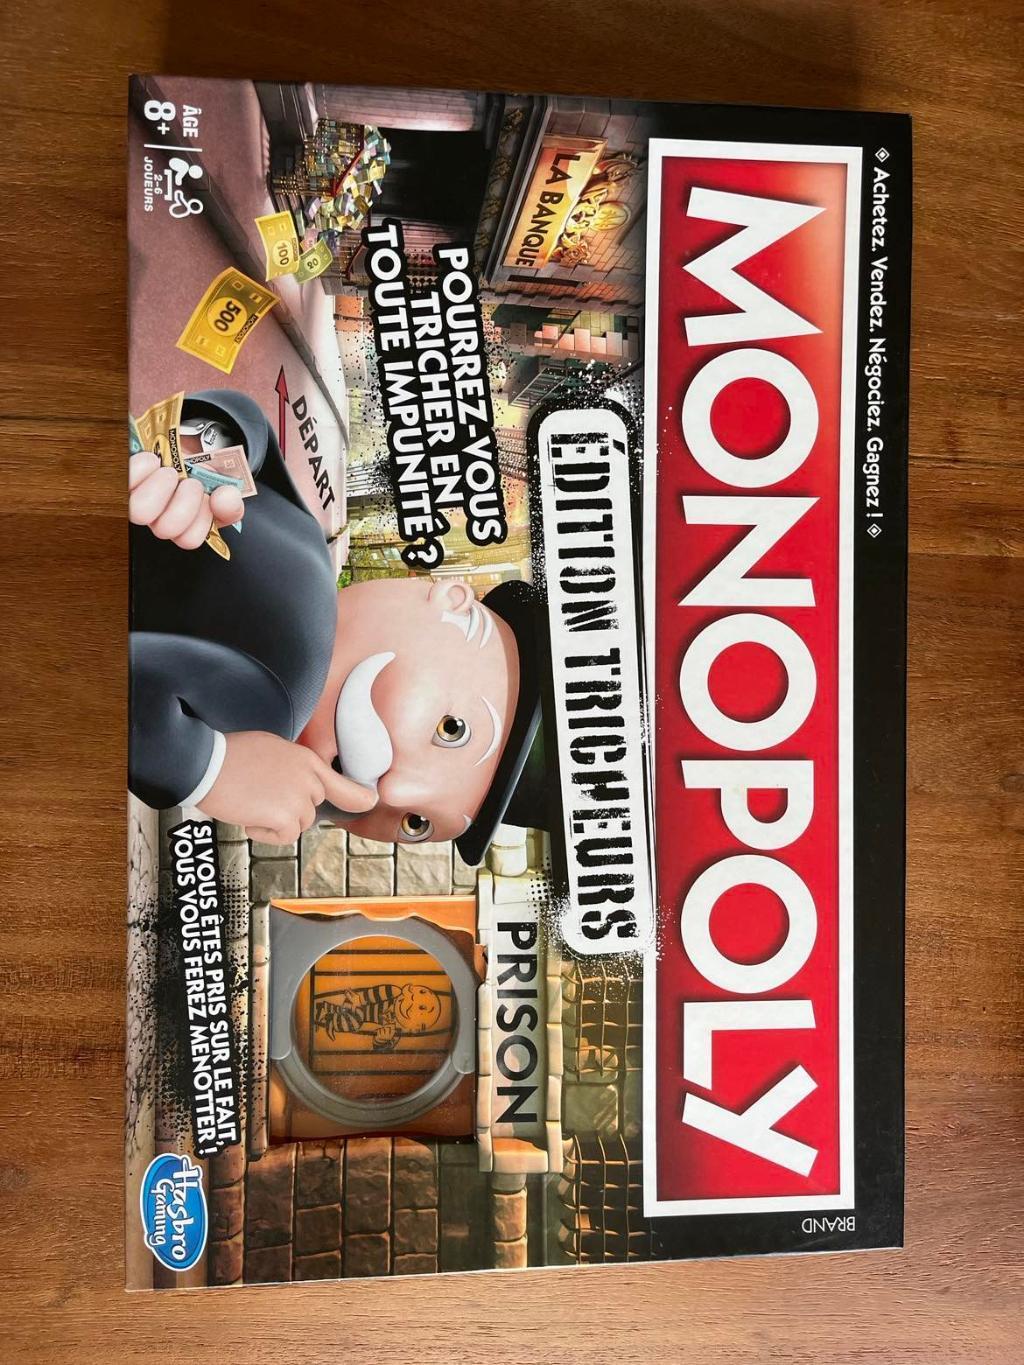 Monopoly édition Tricheurs